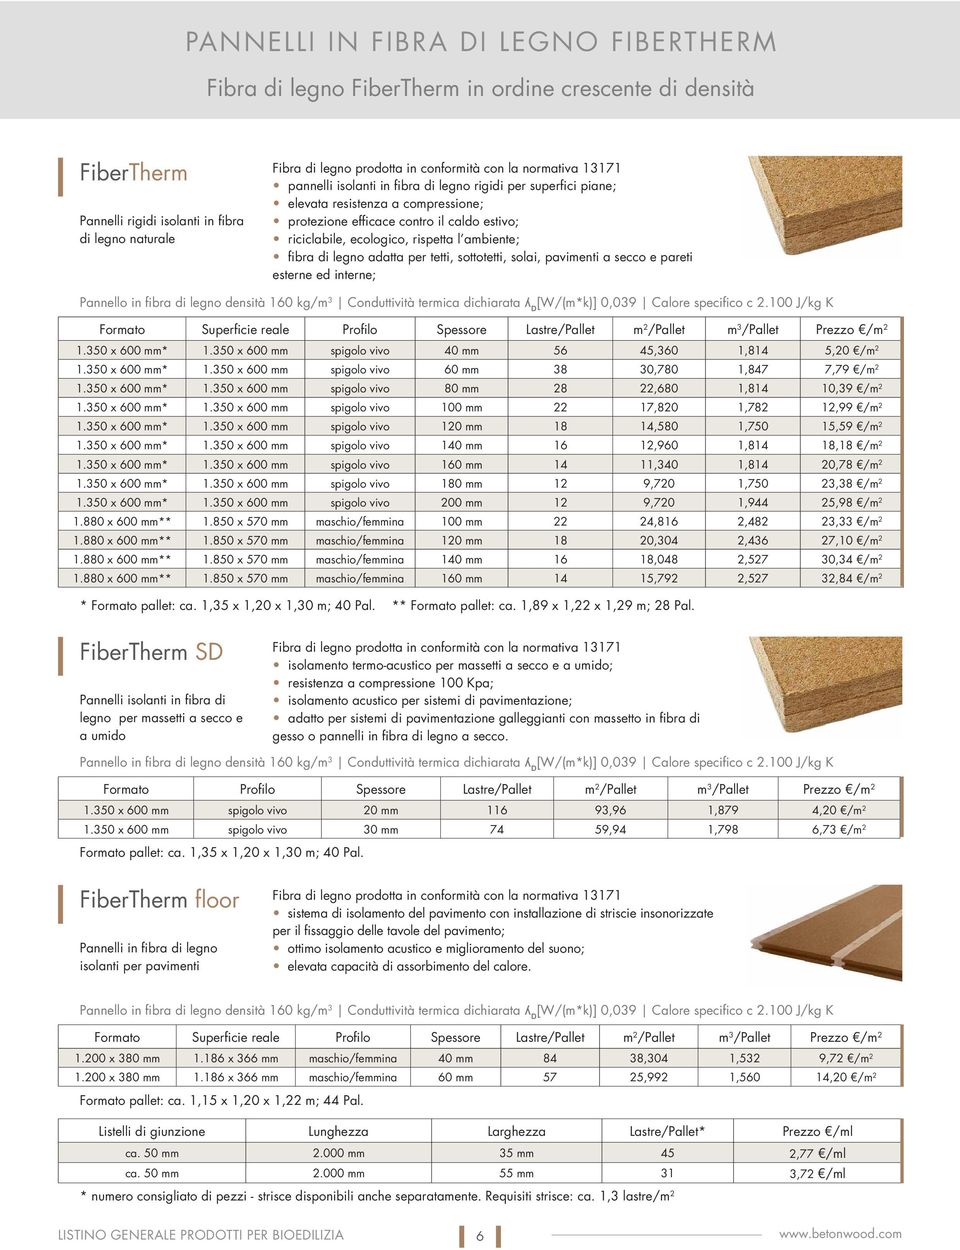 ambiente; fibra di legno adatta per tetti, sottotetti, solai, pavimenti a secco e pareti esterne ed interne; Pannello in fibra di legno densità 160 kg/m 3 Conduttività termica dichiarata ʎ D